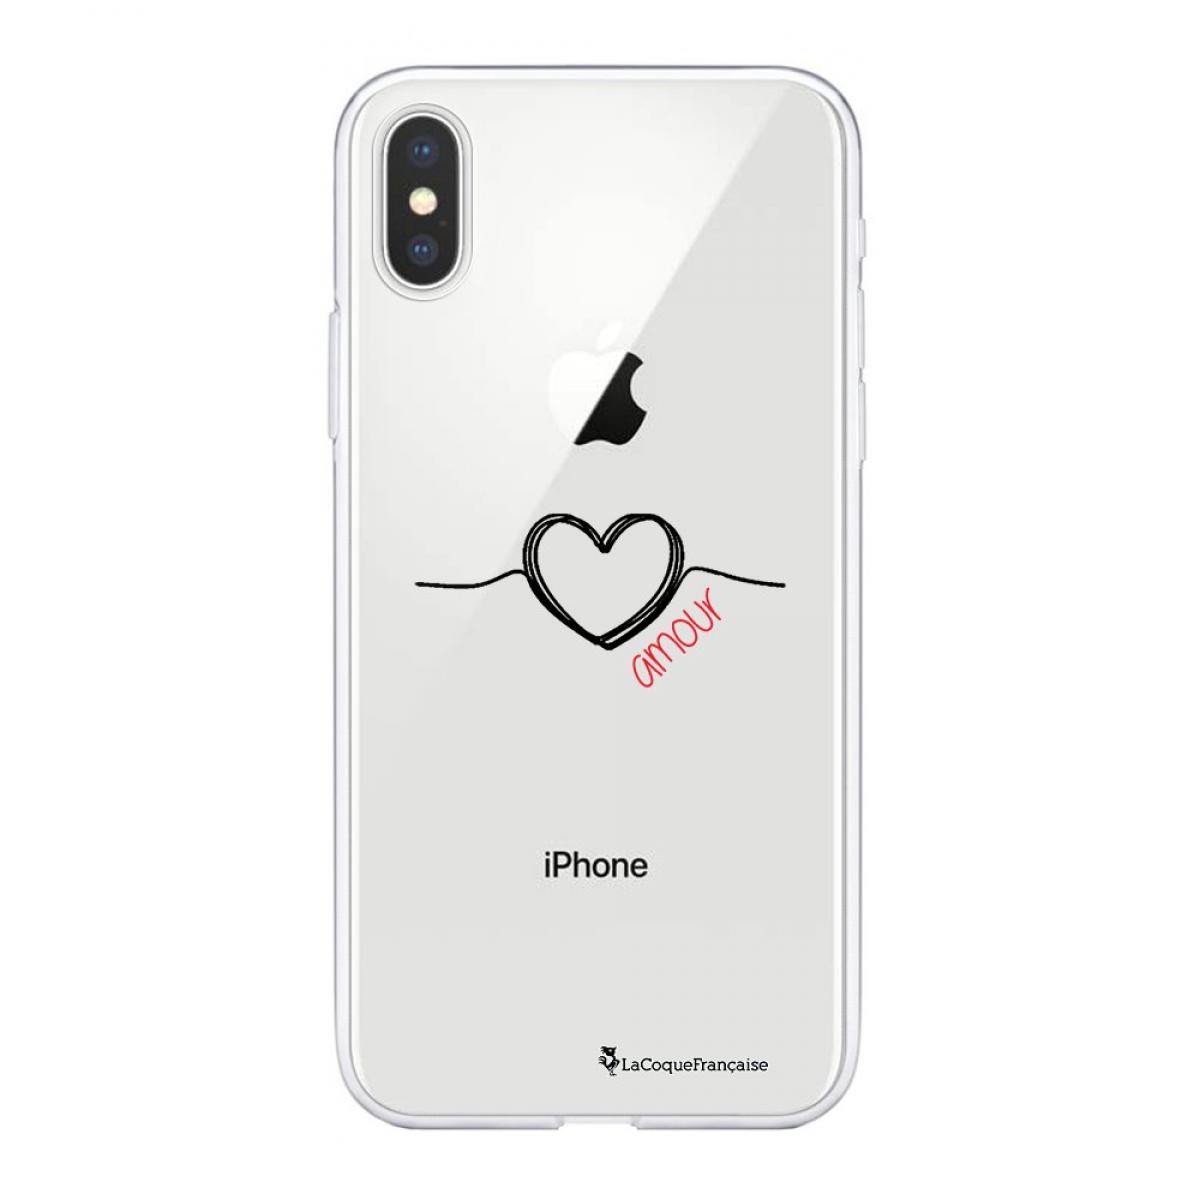 La Coque Francaise - Coque iPhone Xs Max souple transparente Coeur Noir Amour Motif Ecriture Tendance La Coque Francaise - Coque, étui smartphone